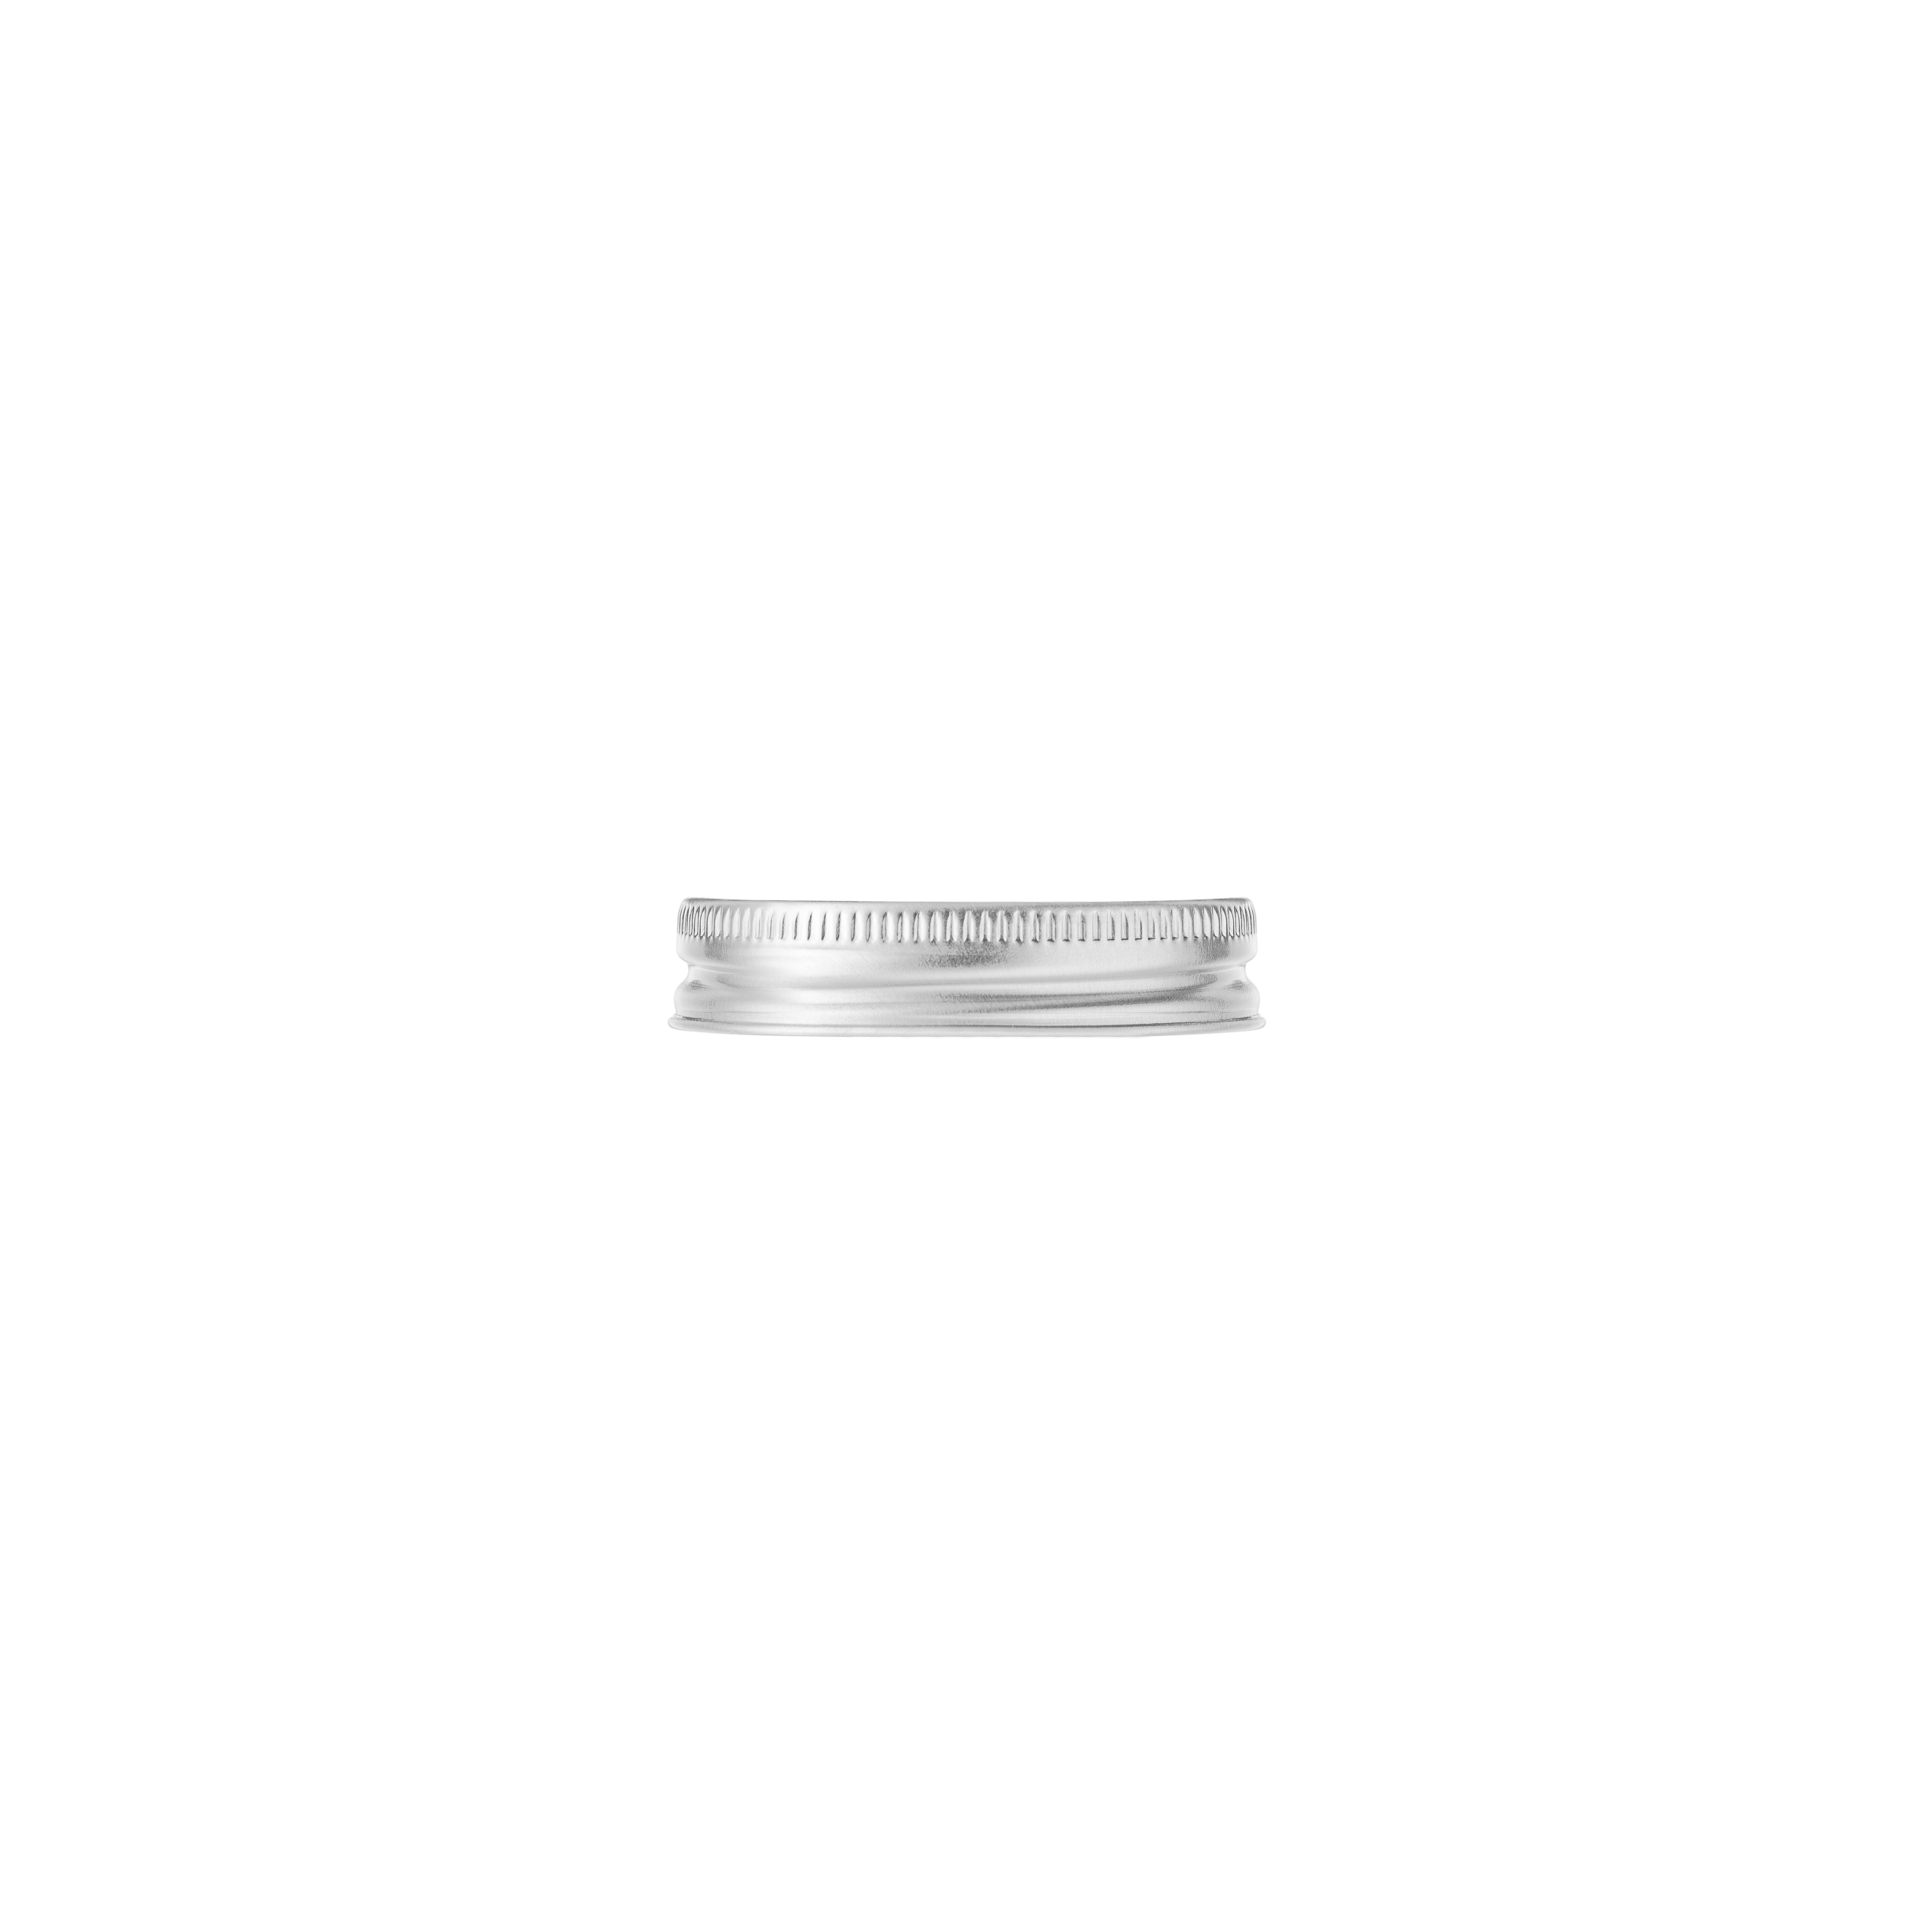 Screw cap Clio 269, 48/400, aluminium, silver, white inlay (Violette 100)